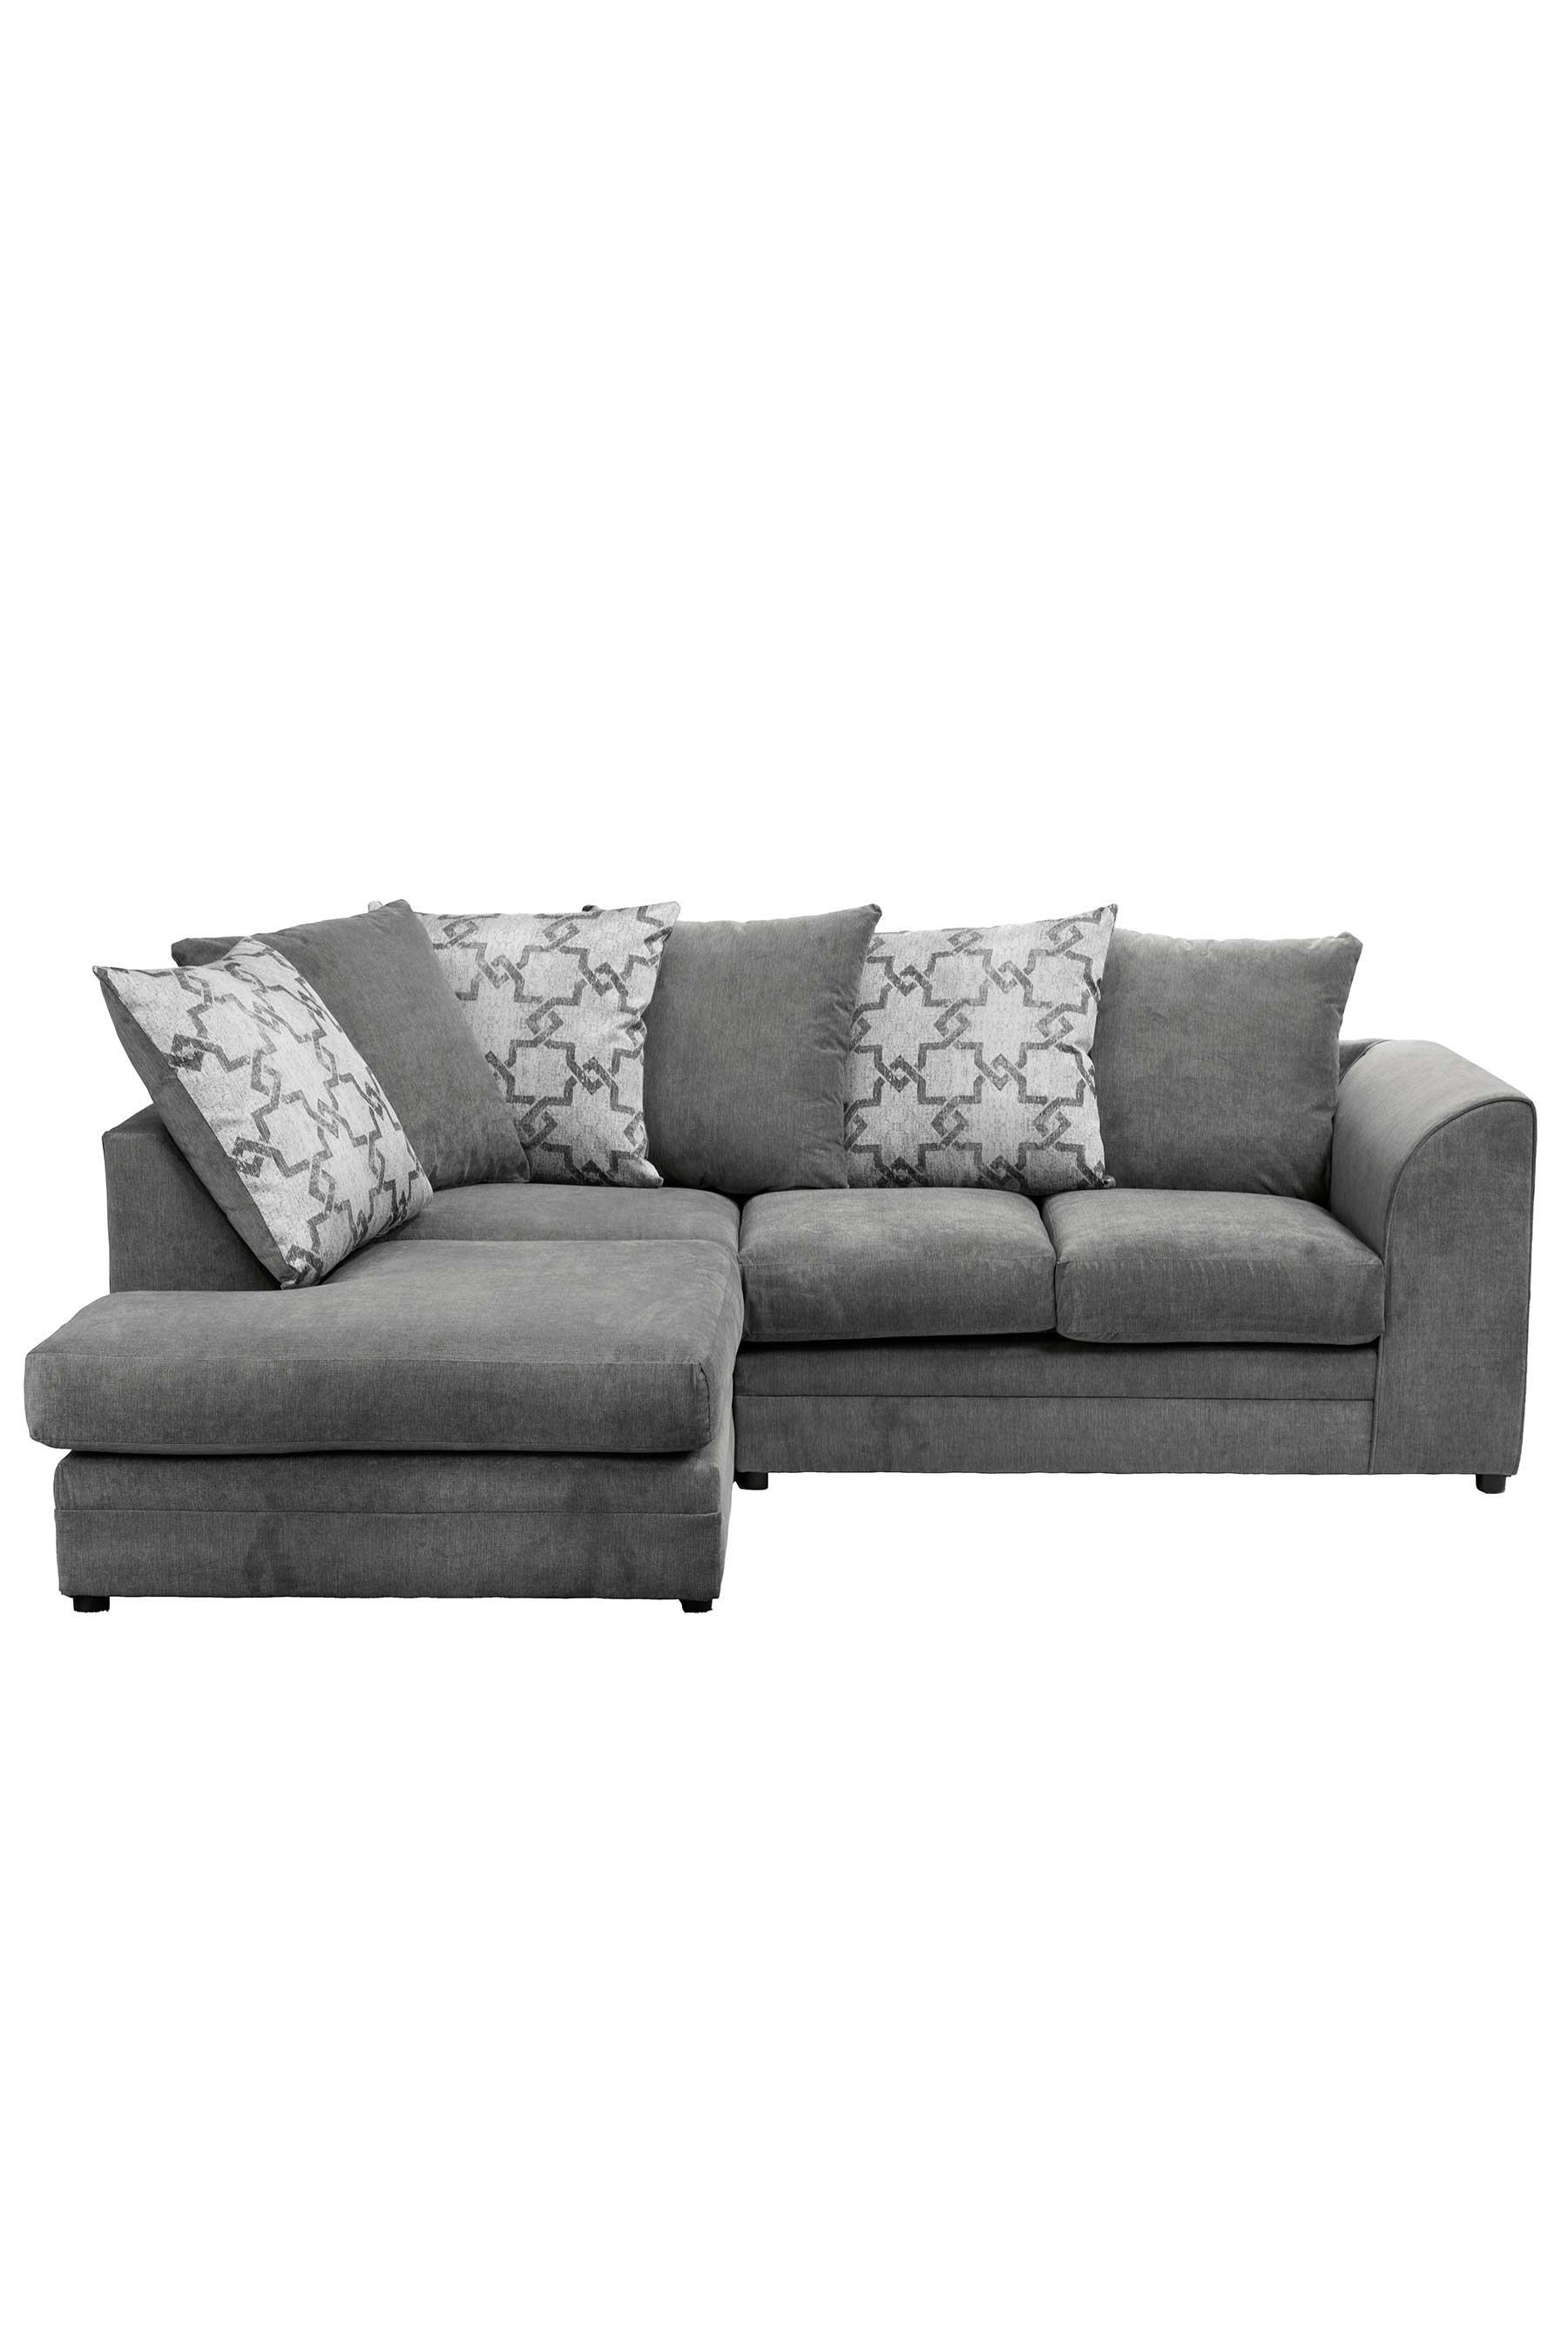 Francesca Left Hand Corner Sofa - Size: Left Corner Group - Grey